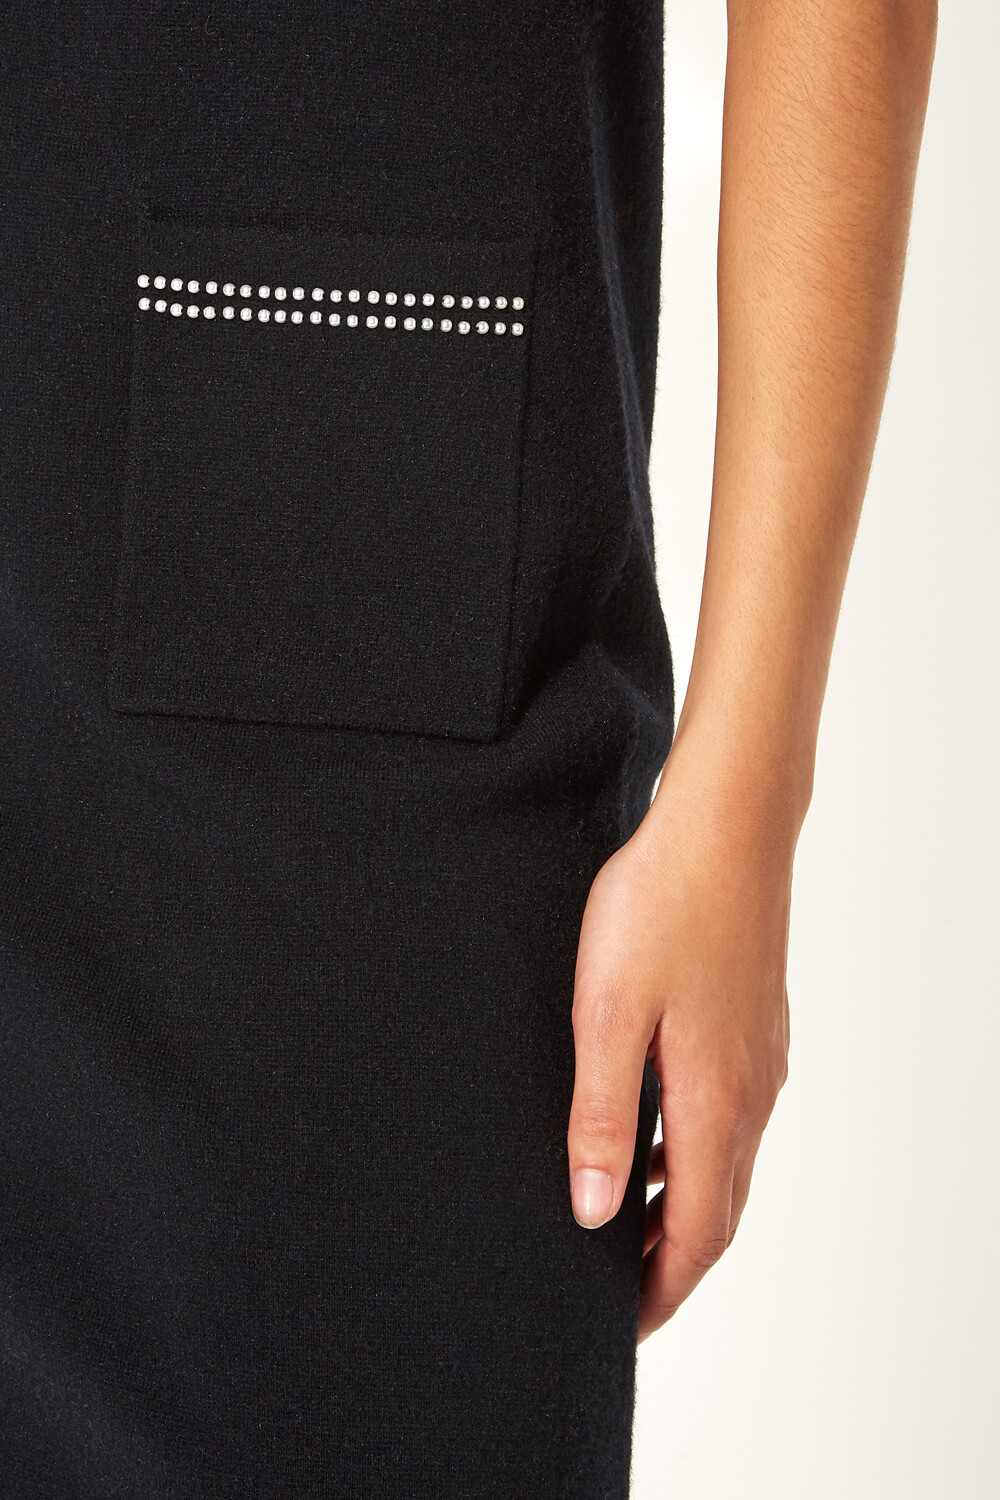 Black Pearl Embellished Short Sleeve Dress, Image 4 of 5